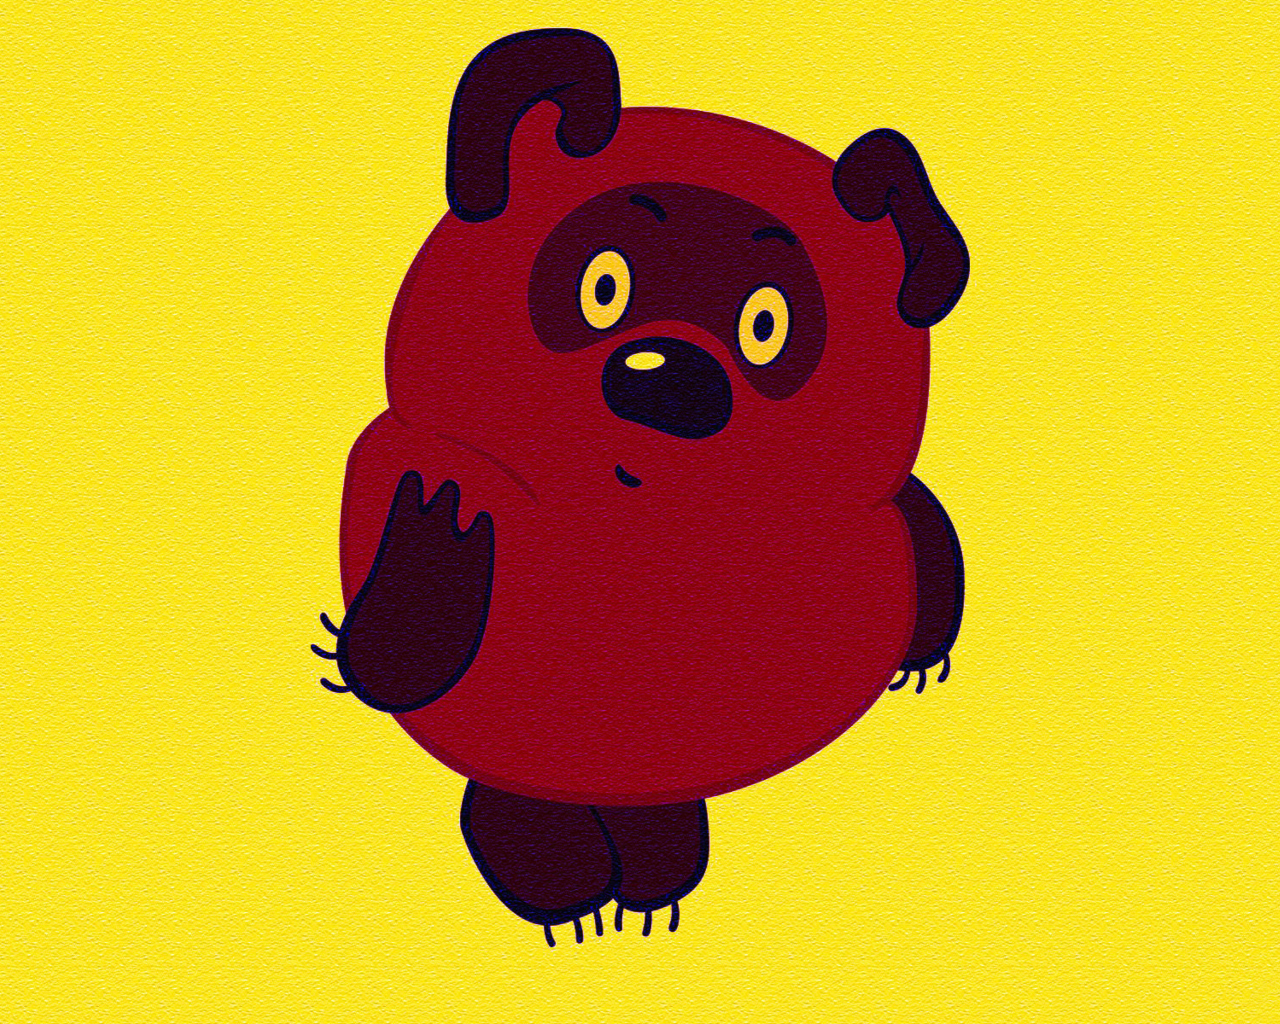 Russian Cartoon Character Winnie Pooh wallpaper 1280x1024